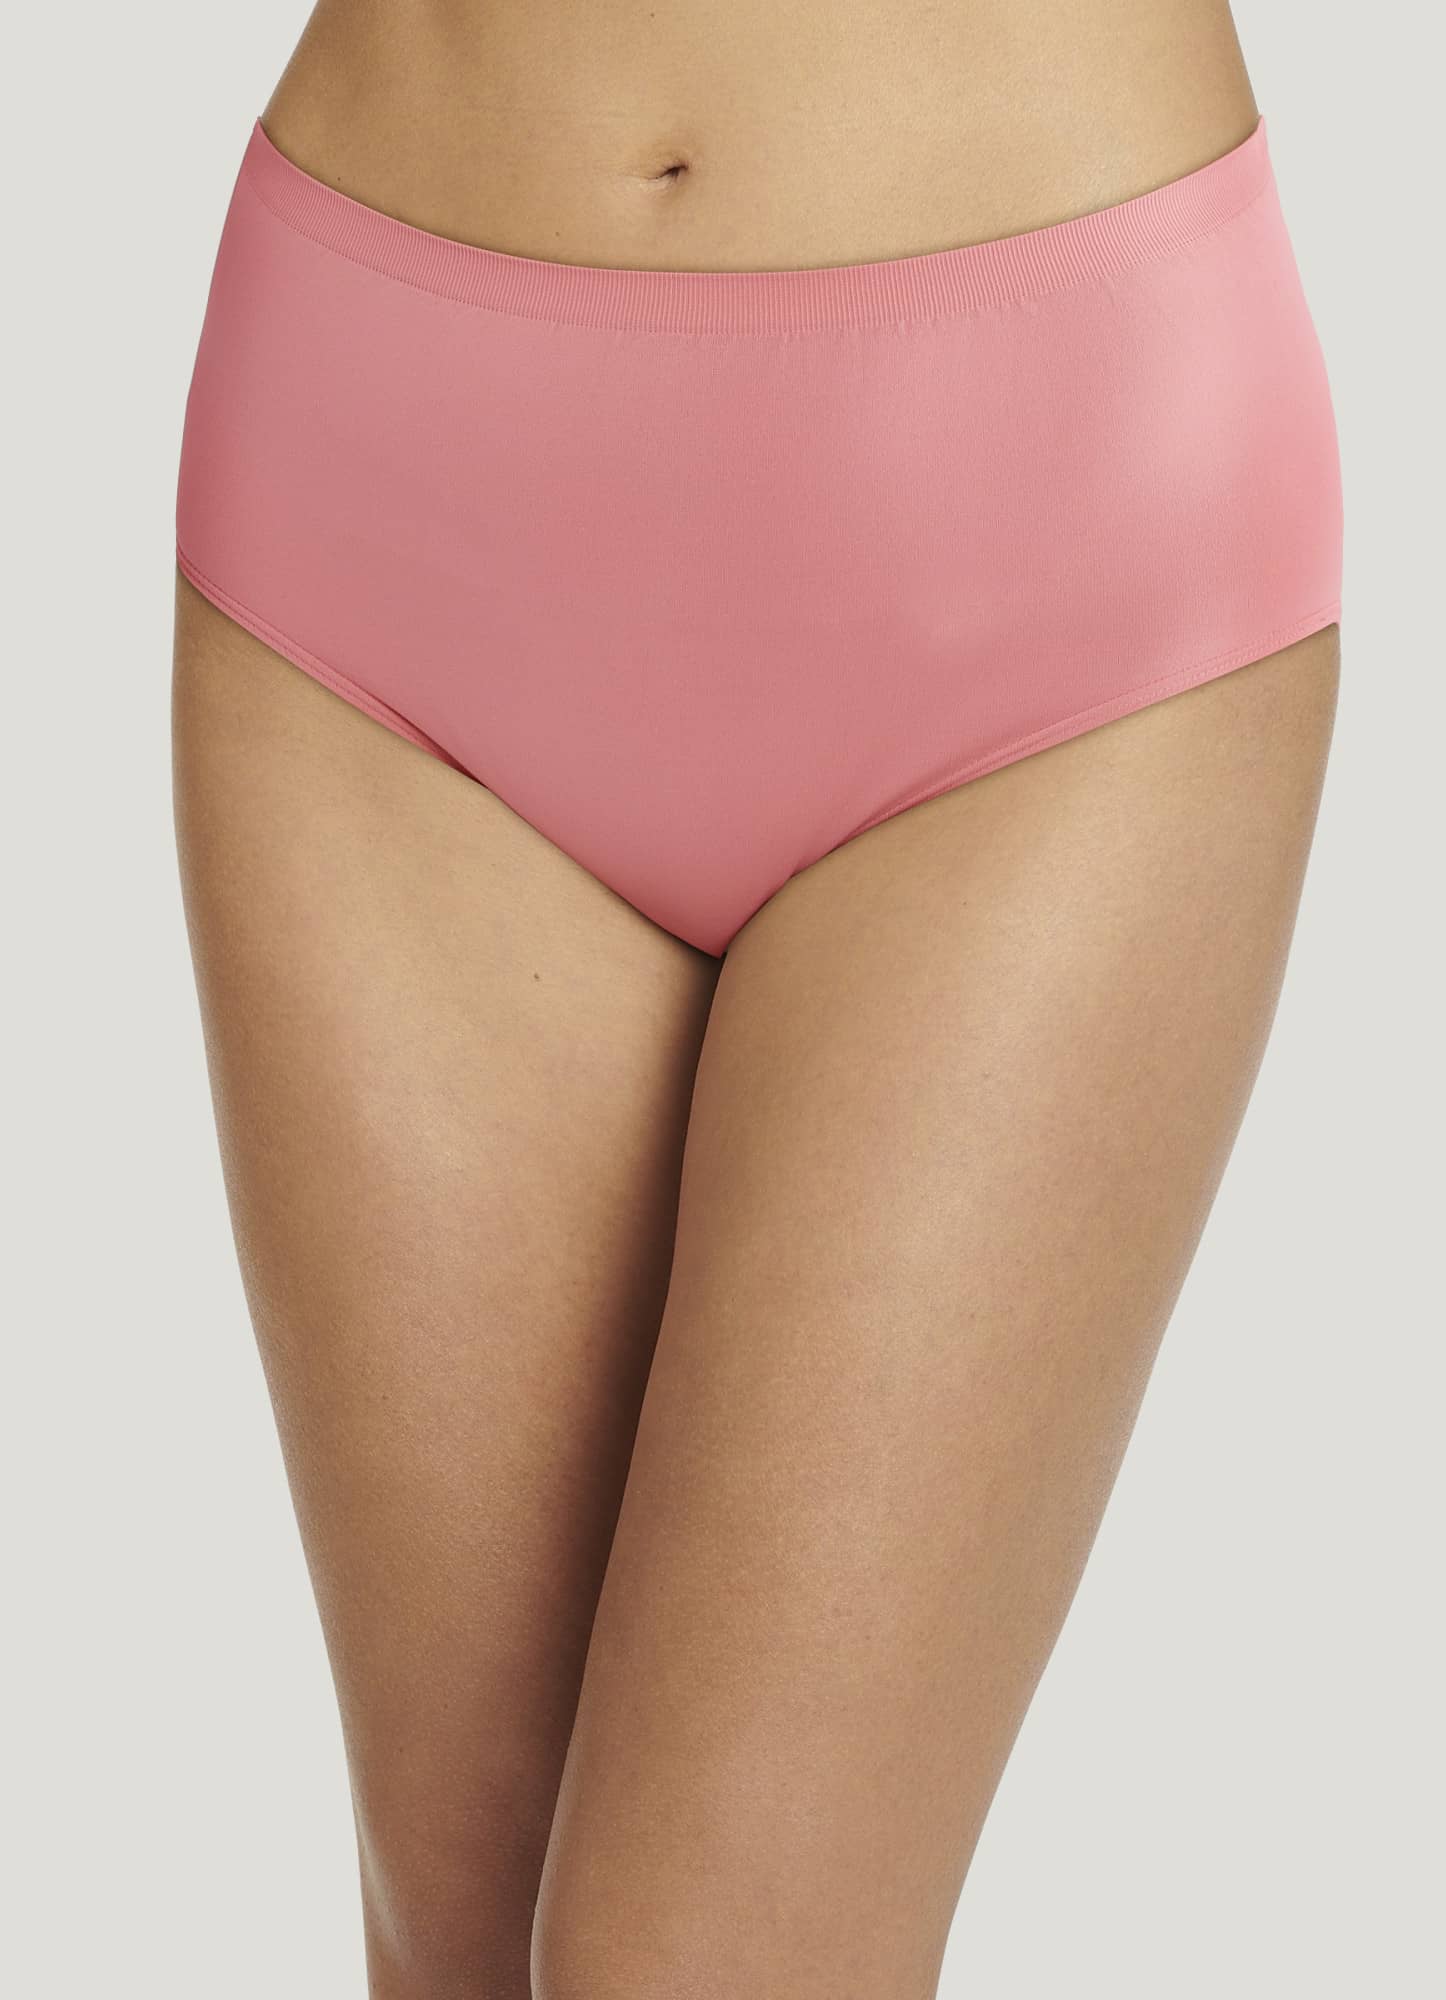  Jockey Womens Underwear Comfies Microfiber Brief - 3 Pack